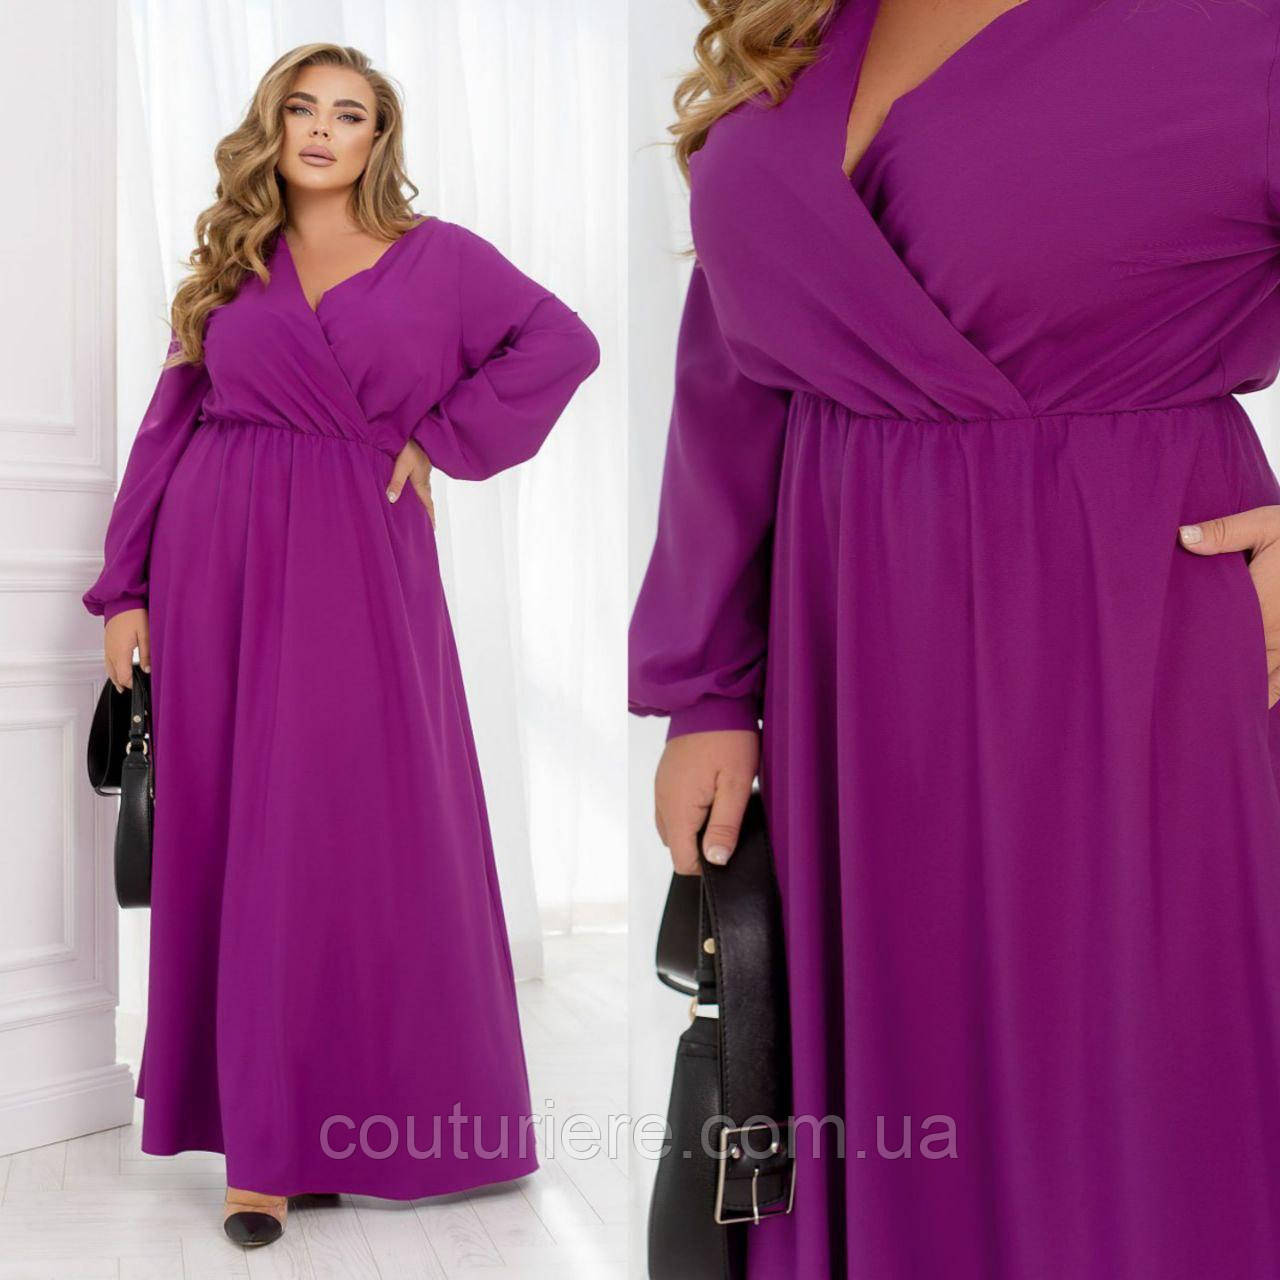 Вечірня жіноча сукня максі фуксія великих розмірів (5 кольорів) ЮР/-32466